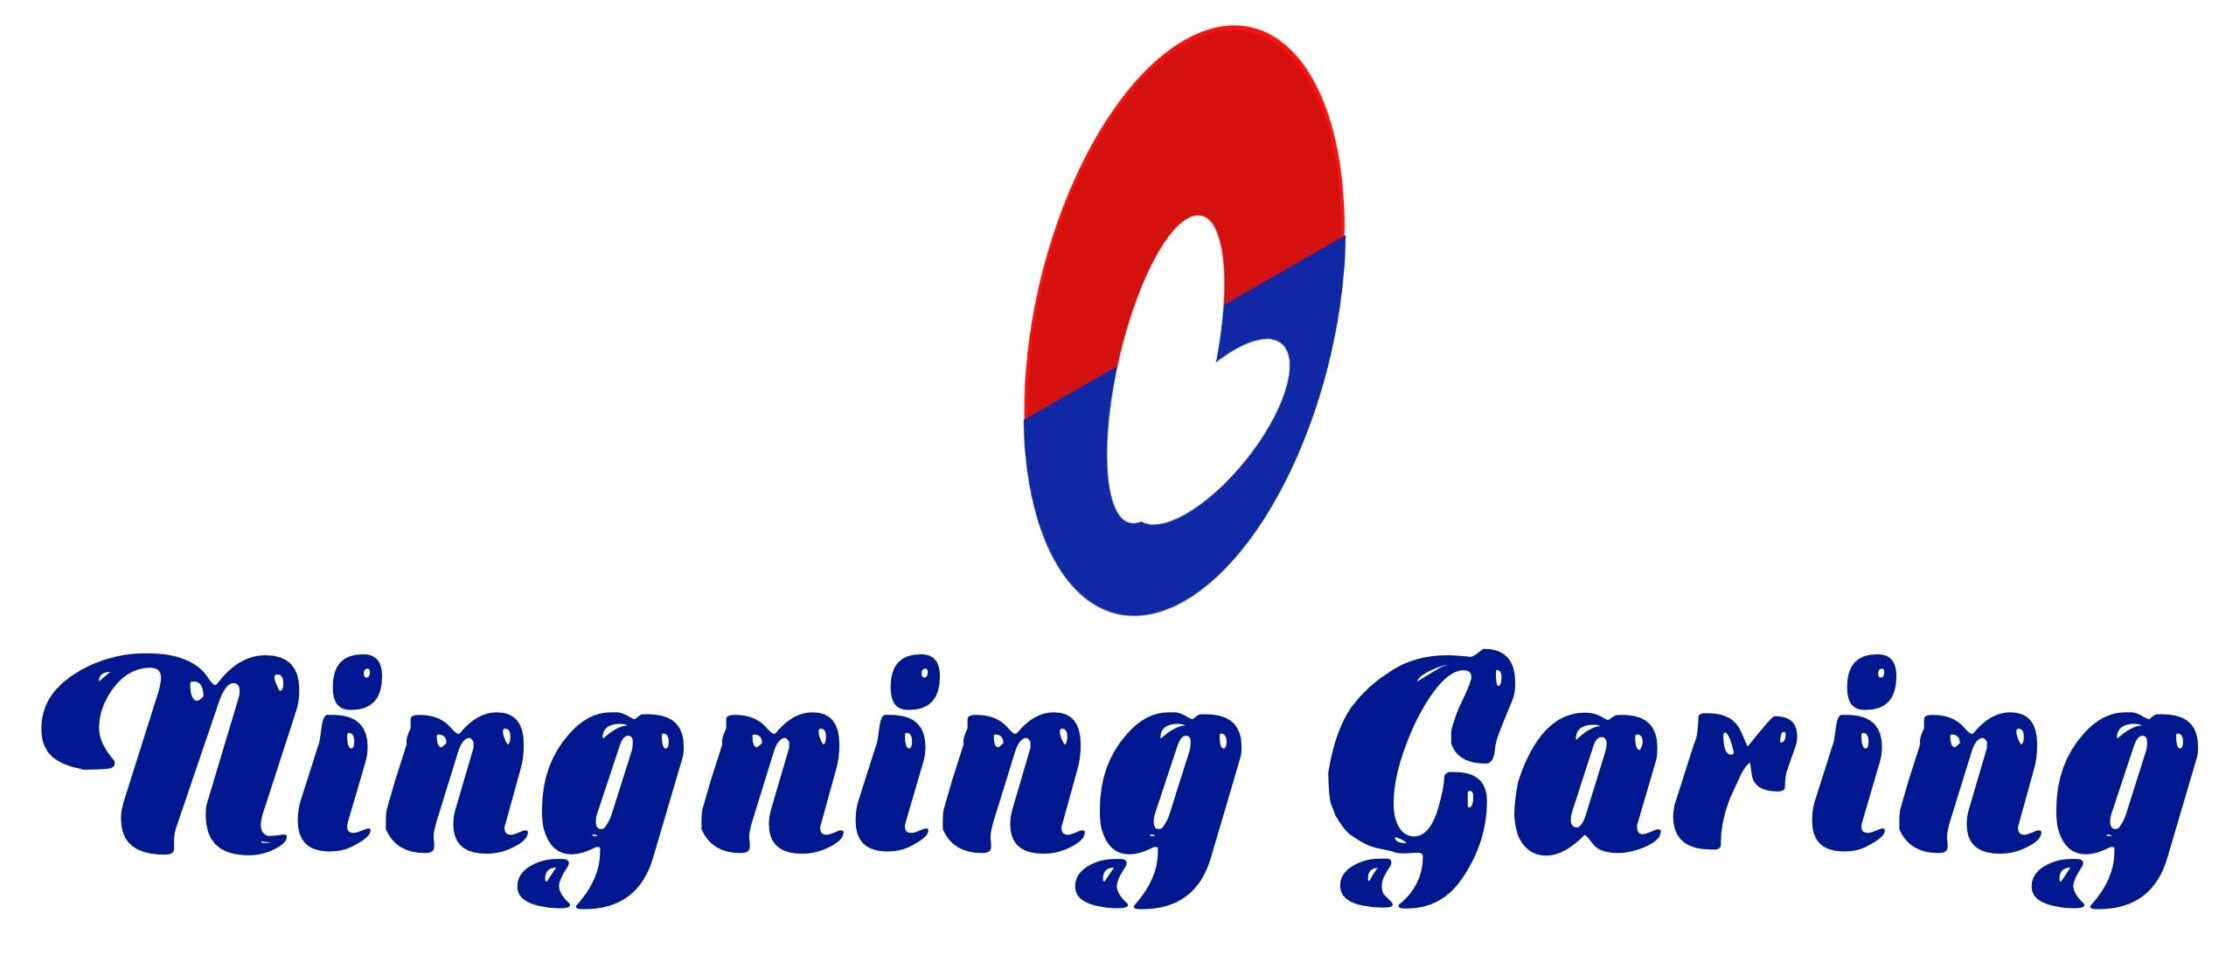 Maria Elena Ningning Garing mendoza logo